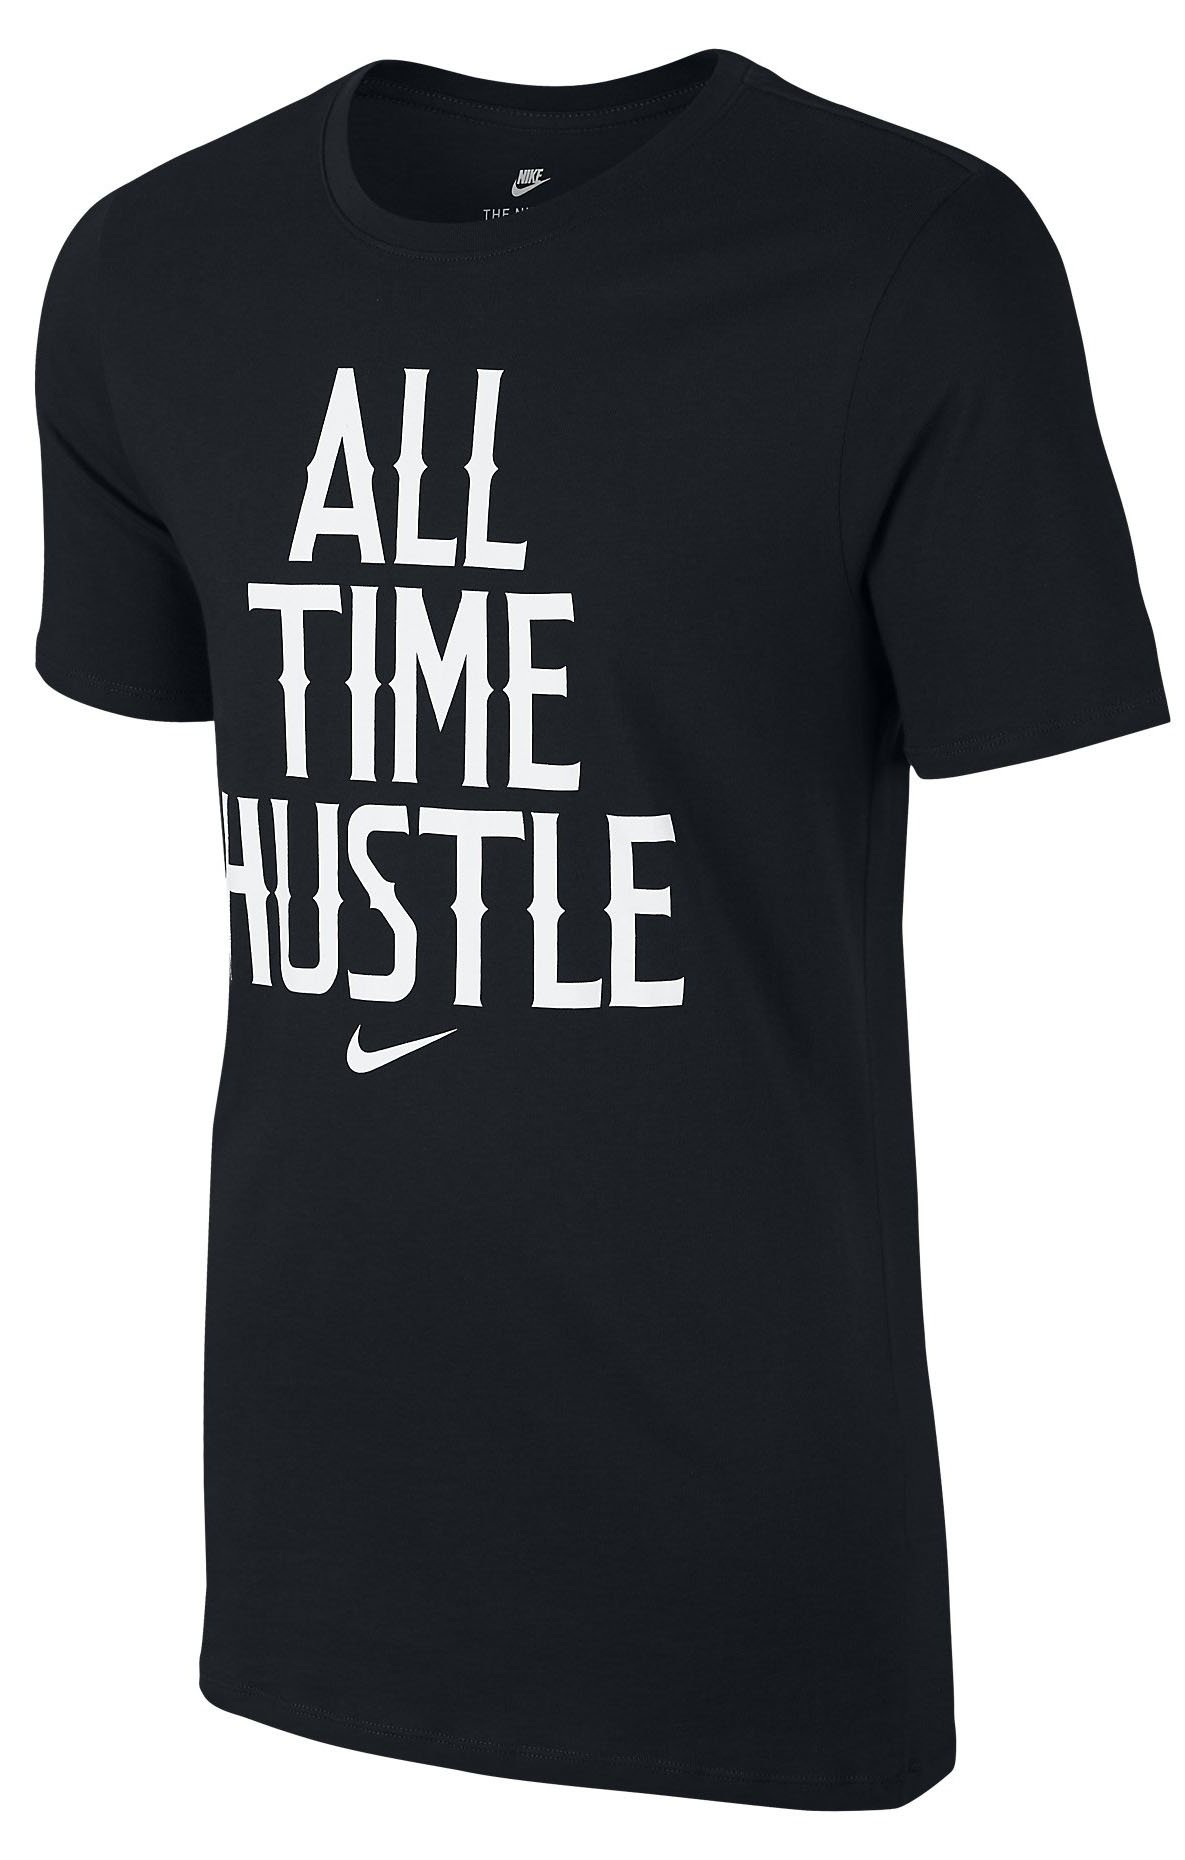 Pánské tričko s krátkým rukávem Nike All Time Hustle